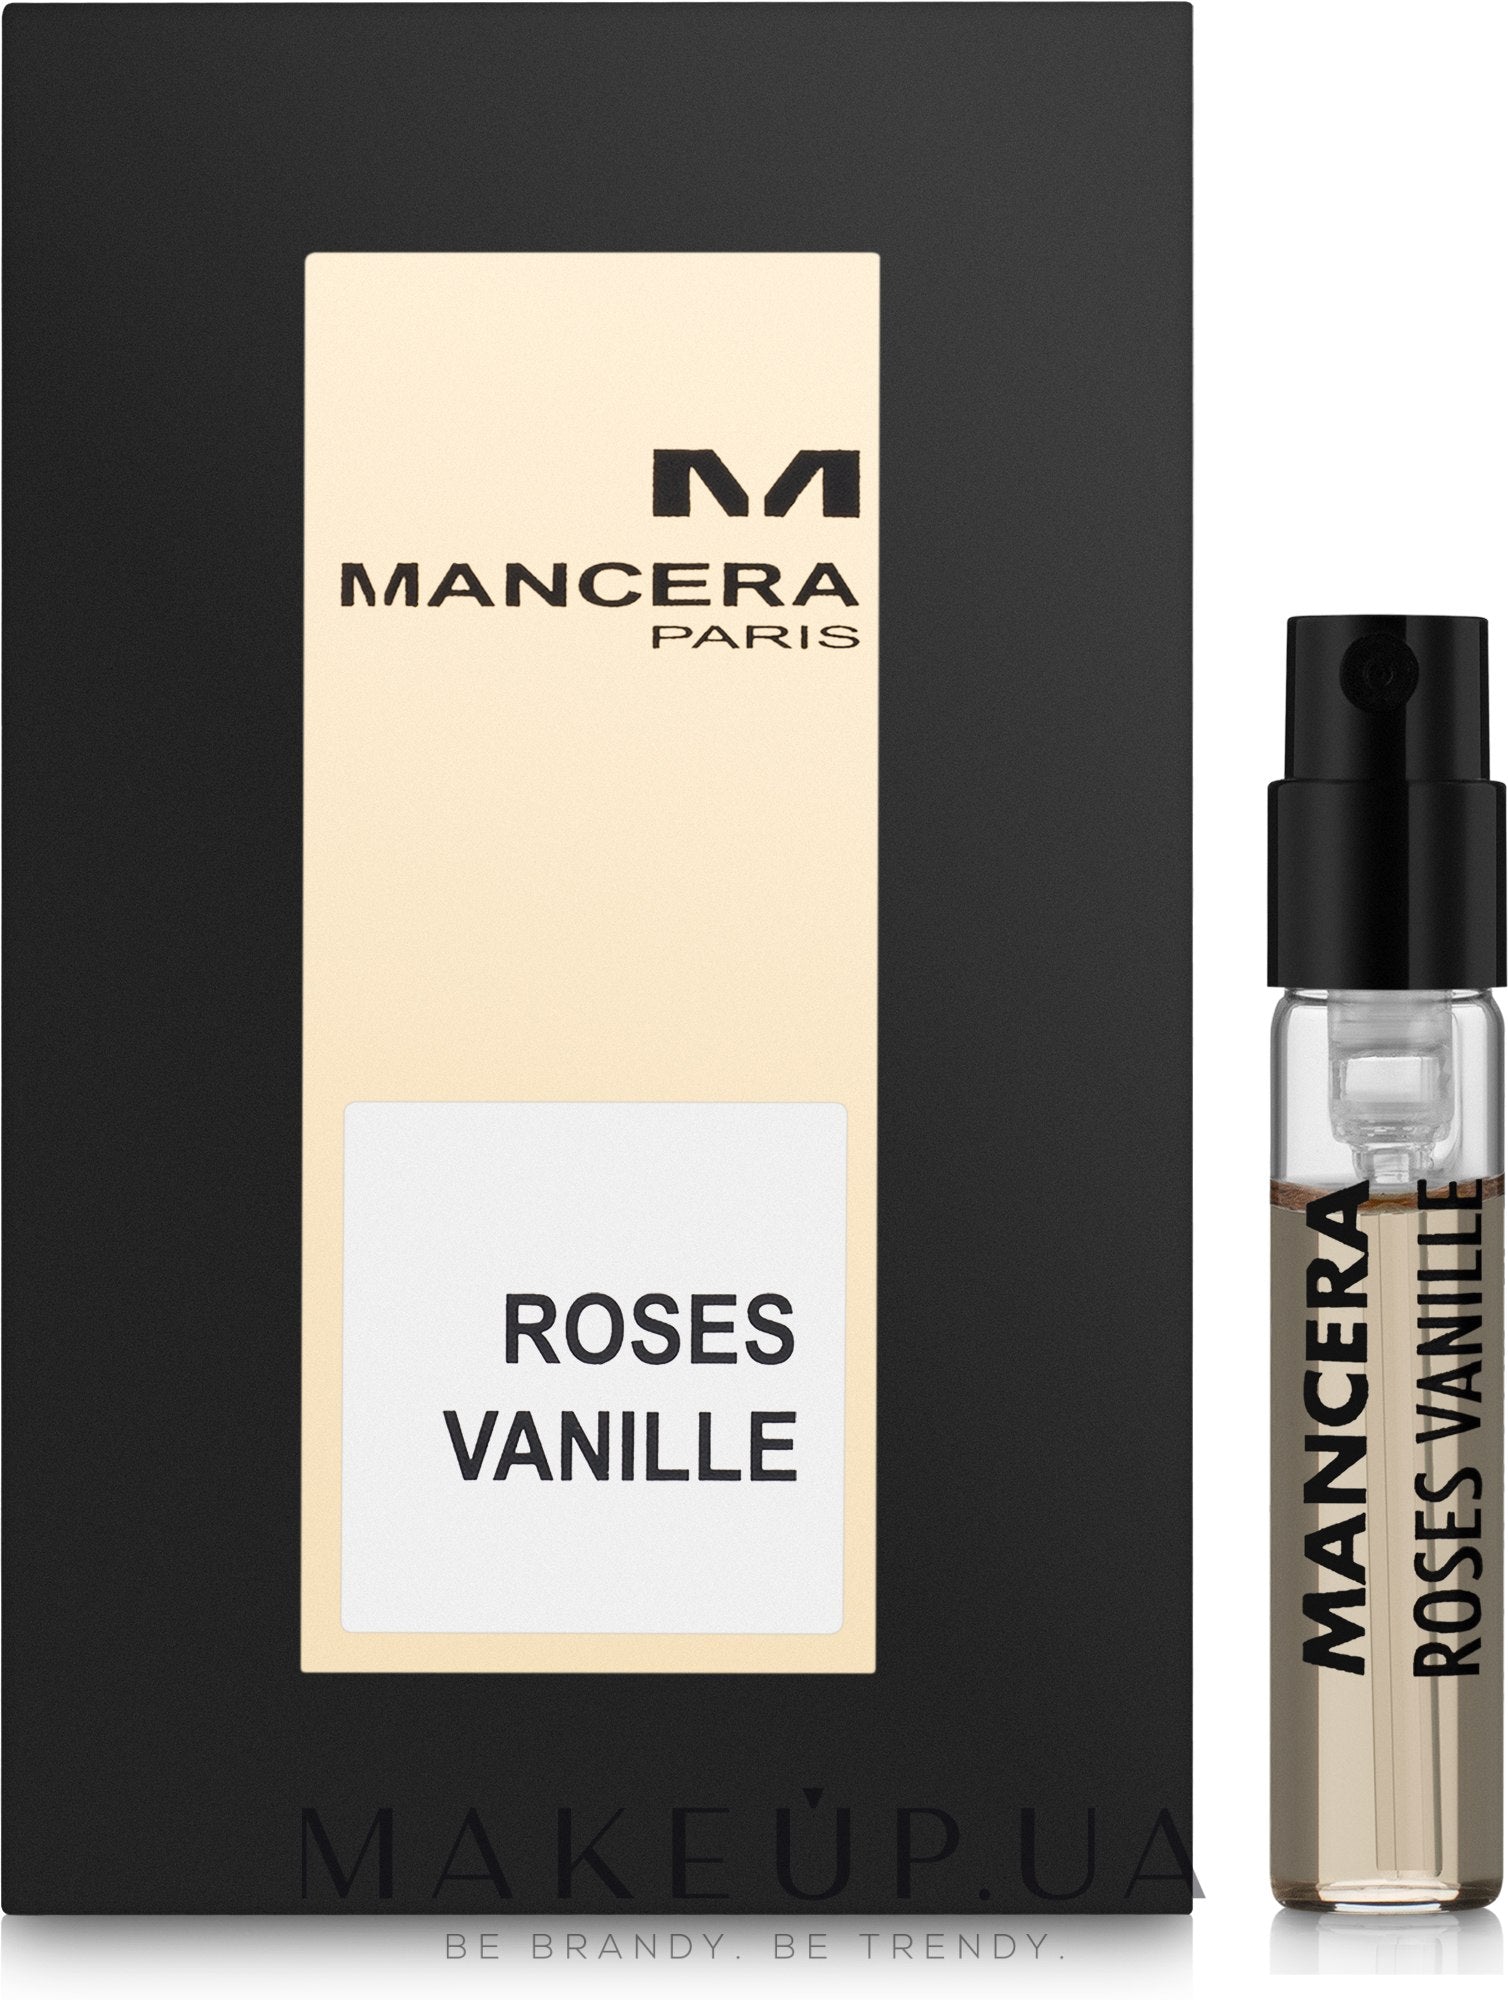 マンセラ Roses Vanille サンプル-マンセラ Roses Vanille-マンセラ-2ml公式サンプル-creed香水サンプル